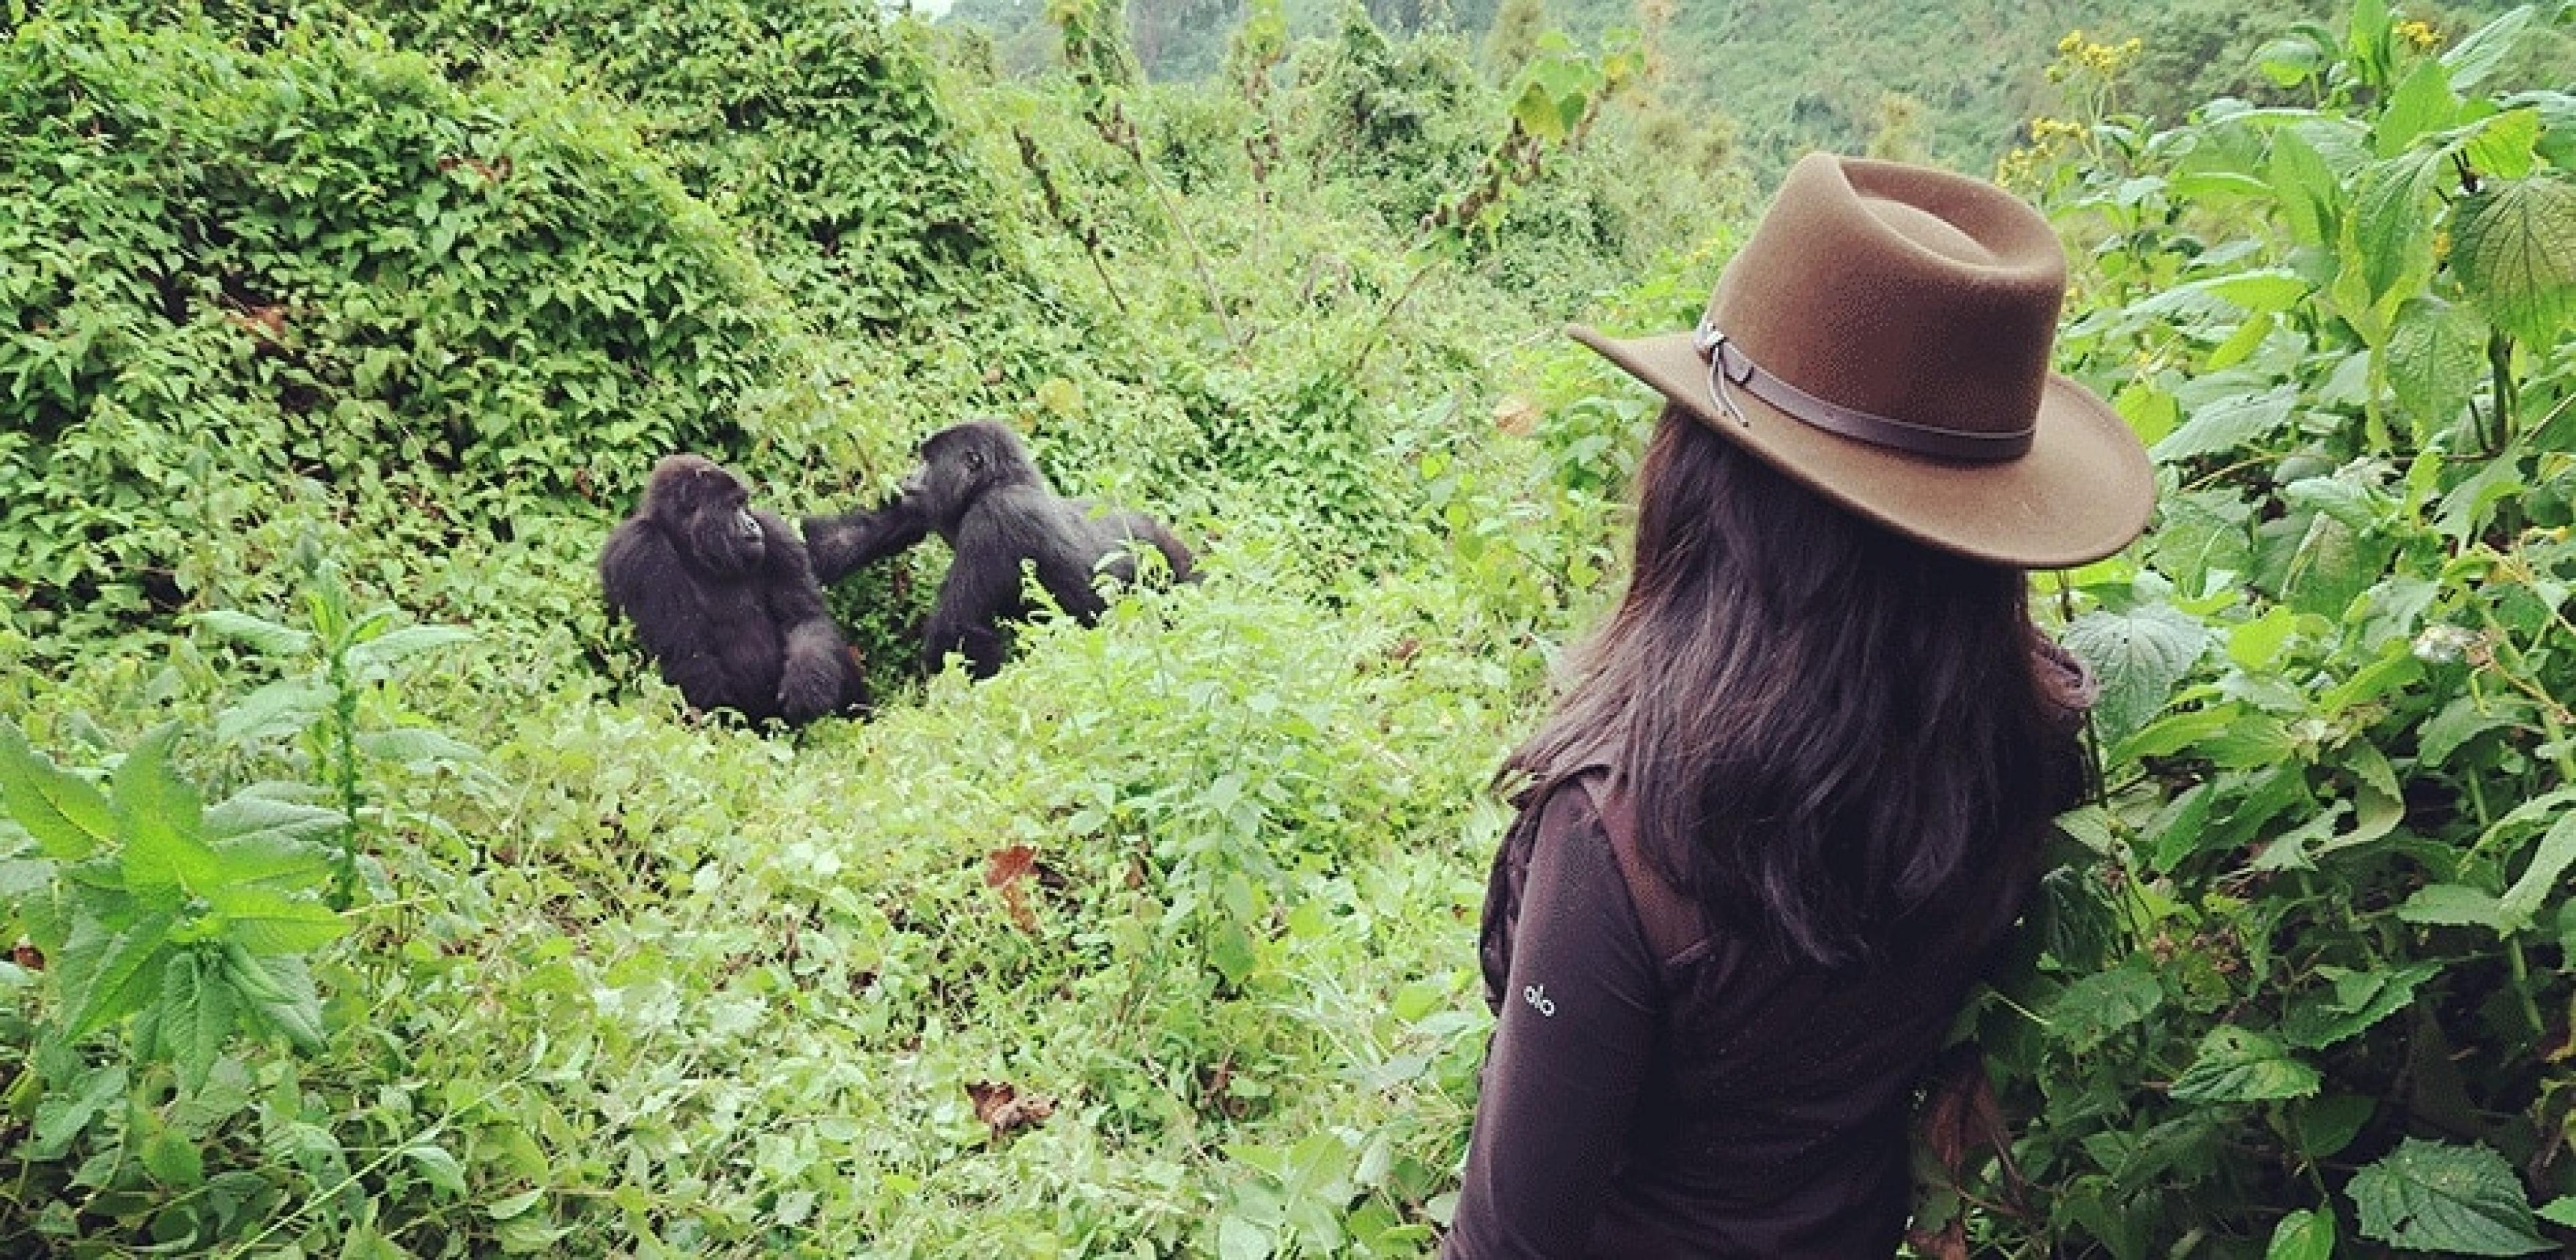 Gorilla trekking in Volcanoes National Park